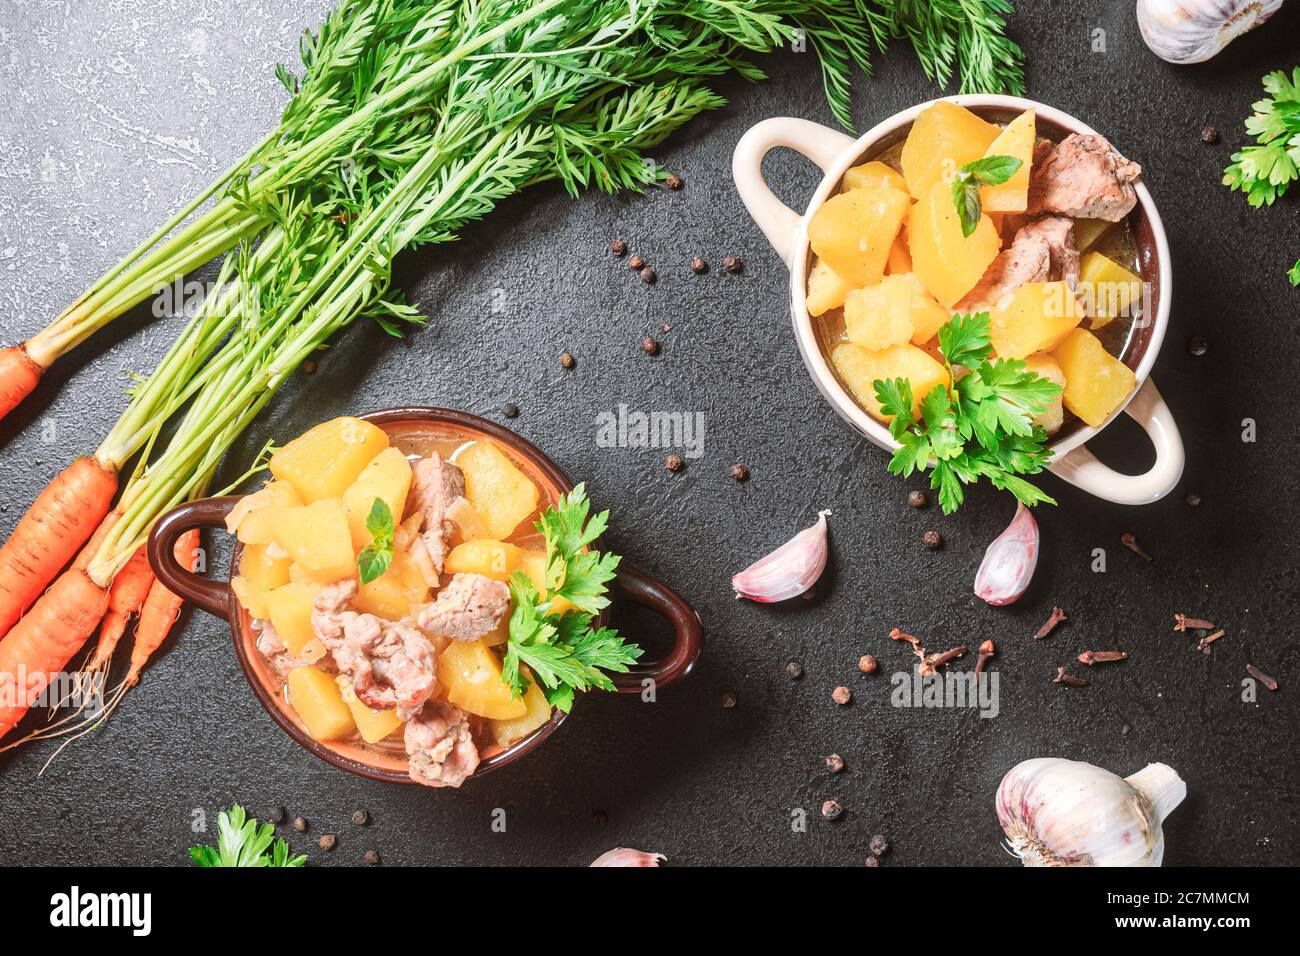 Kartoffelschmorbraten, gebacken mit Fleisch, Schweinefleisch und Petersilie auf einem tiefen Teller neben einem Gewürz numerisch Karotte auf einem schwarzen Tisch. Flach legen, Kopierraum, Draufsicht Stockfoto